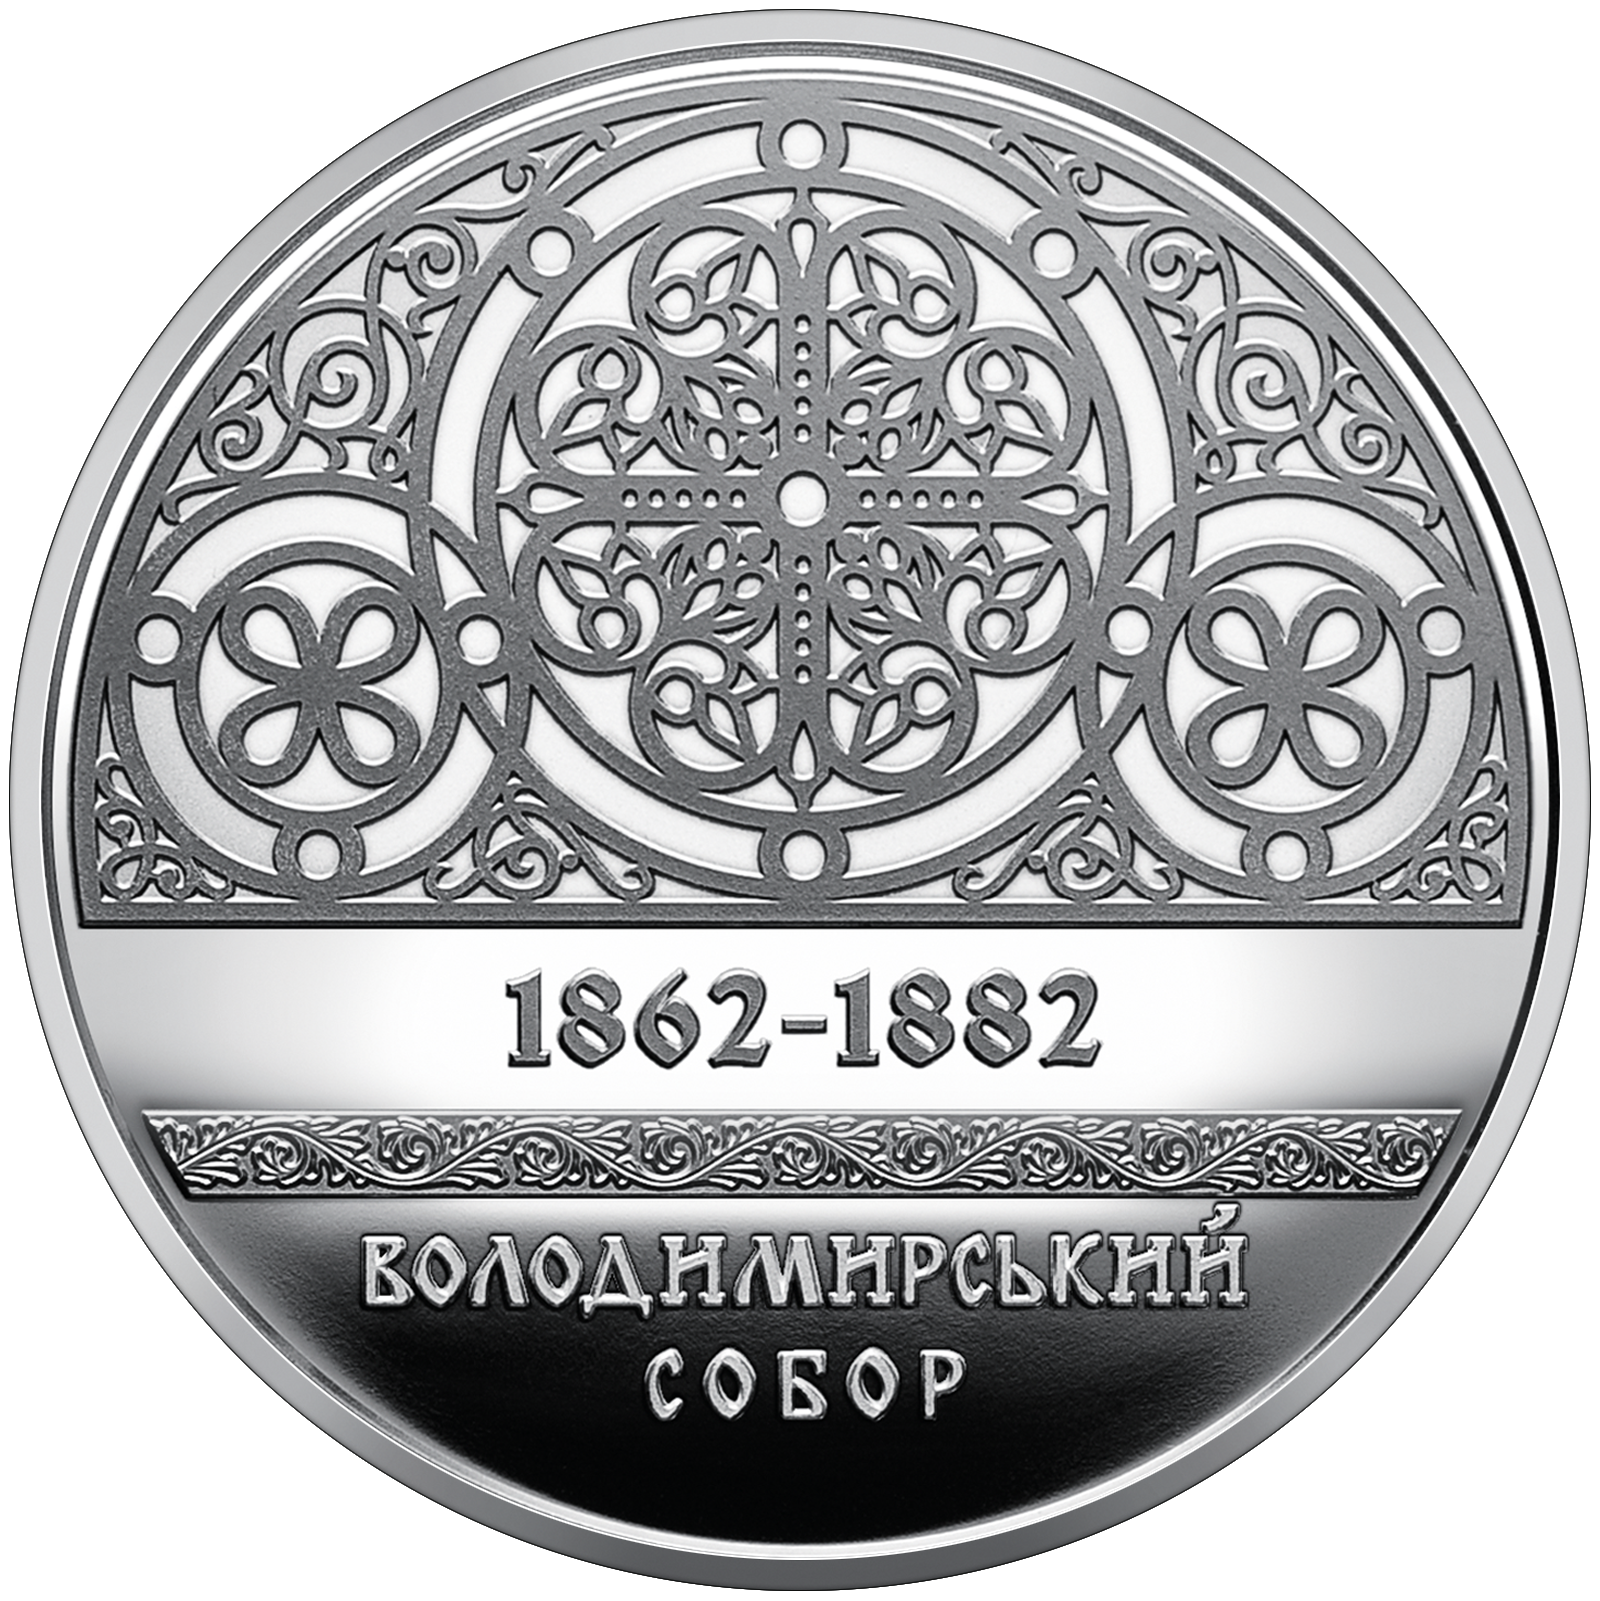 Унікальний орнамент відобразили на монеті